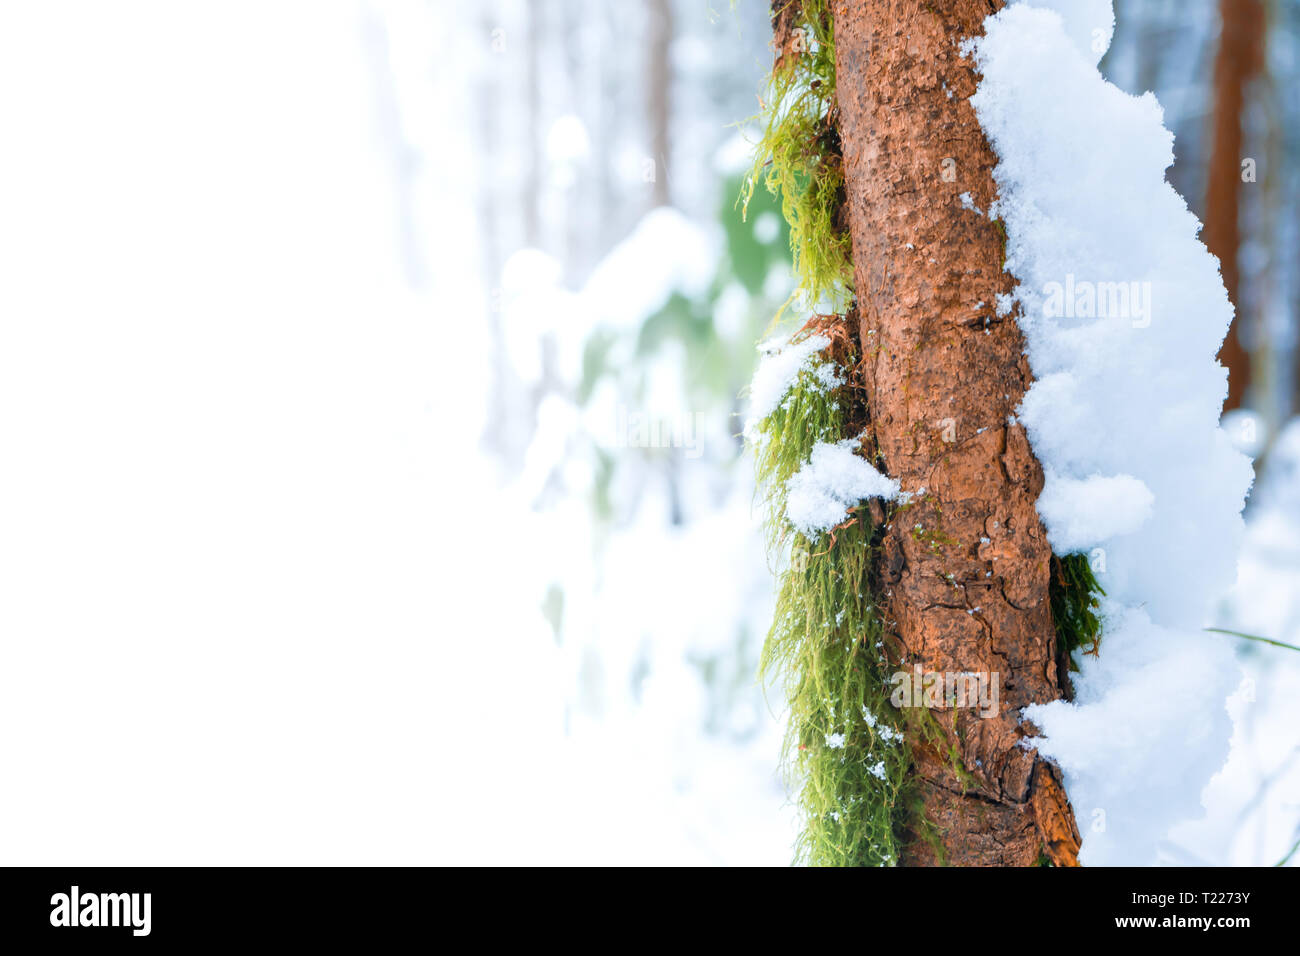 Uno spazio pubblicitario (camera per testo o copiare spazio) sul verde muschio cresce su skinny marrone a tronco di albero con la neve che copre il lato destro in una foresta torbiera, dopo una neve Foto Stock